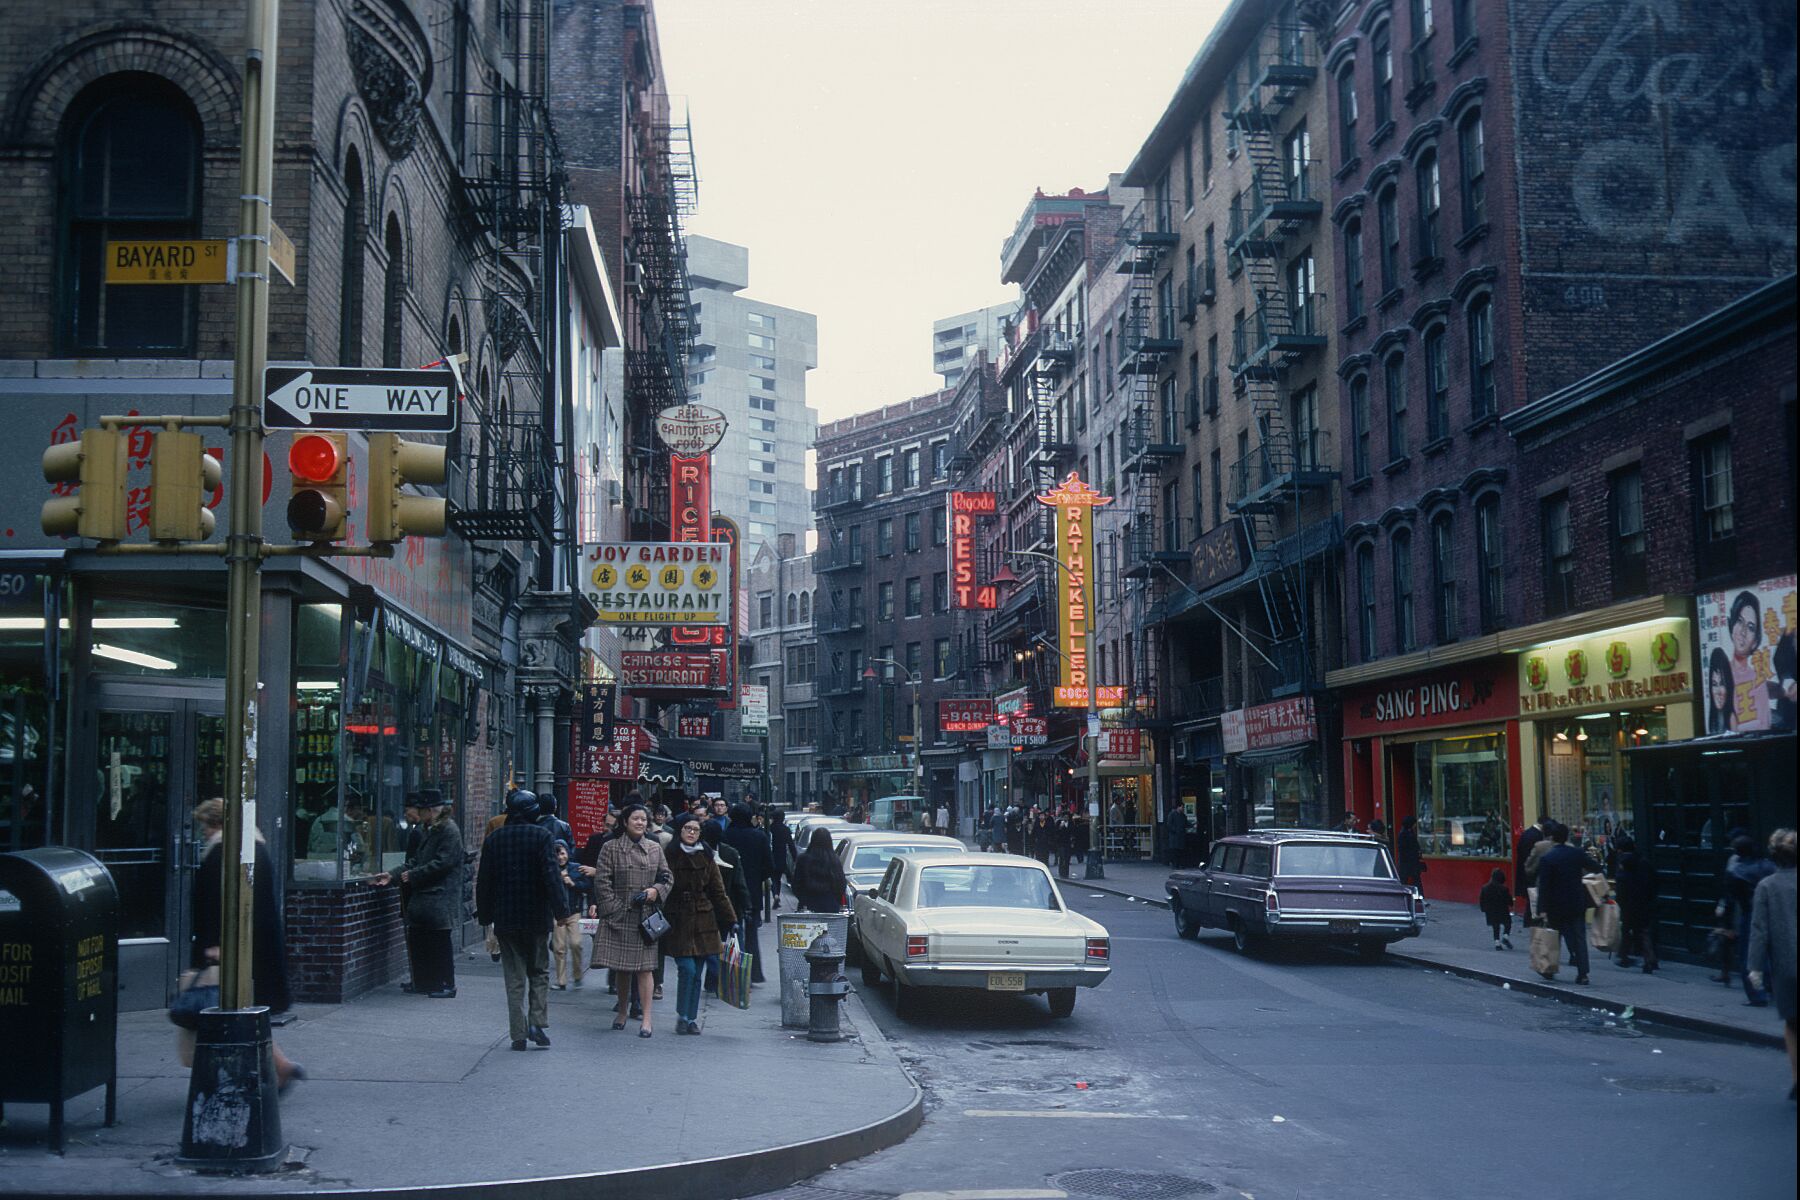 Chinatown, New York City by Gerry Cranham - November 1969